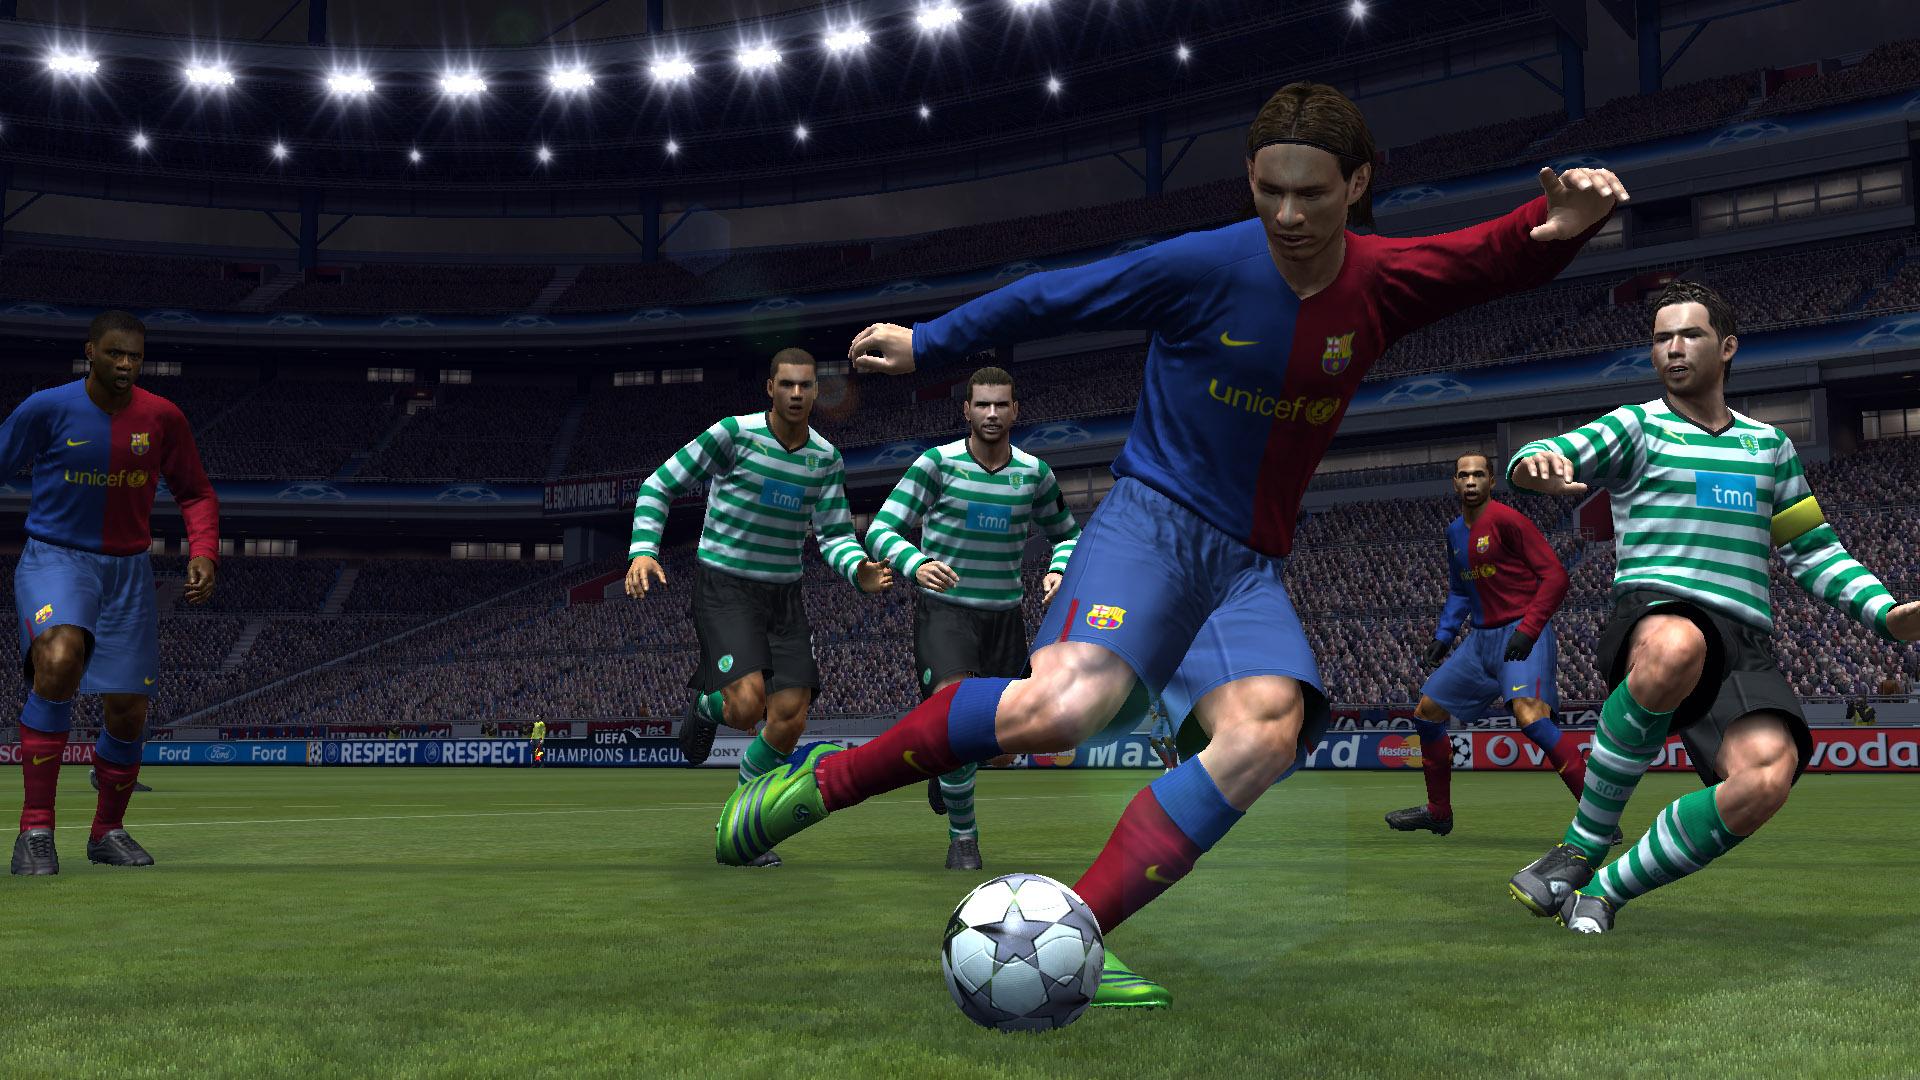 Игра на выход вопросы. Pro Evolution Soccer 2009. Pro Evolution Soccer 2008. PES 2009 на Xbox 360. Pro Evolution Soccer 2008 ps3.